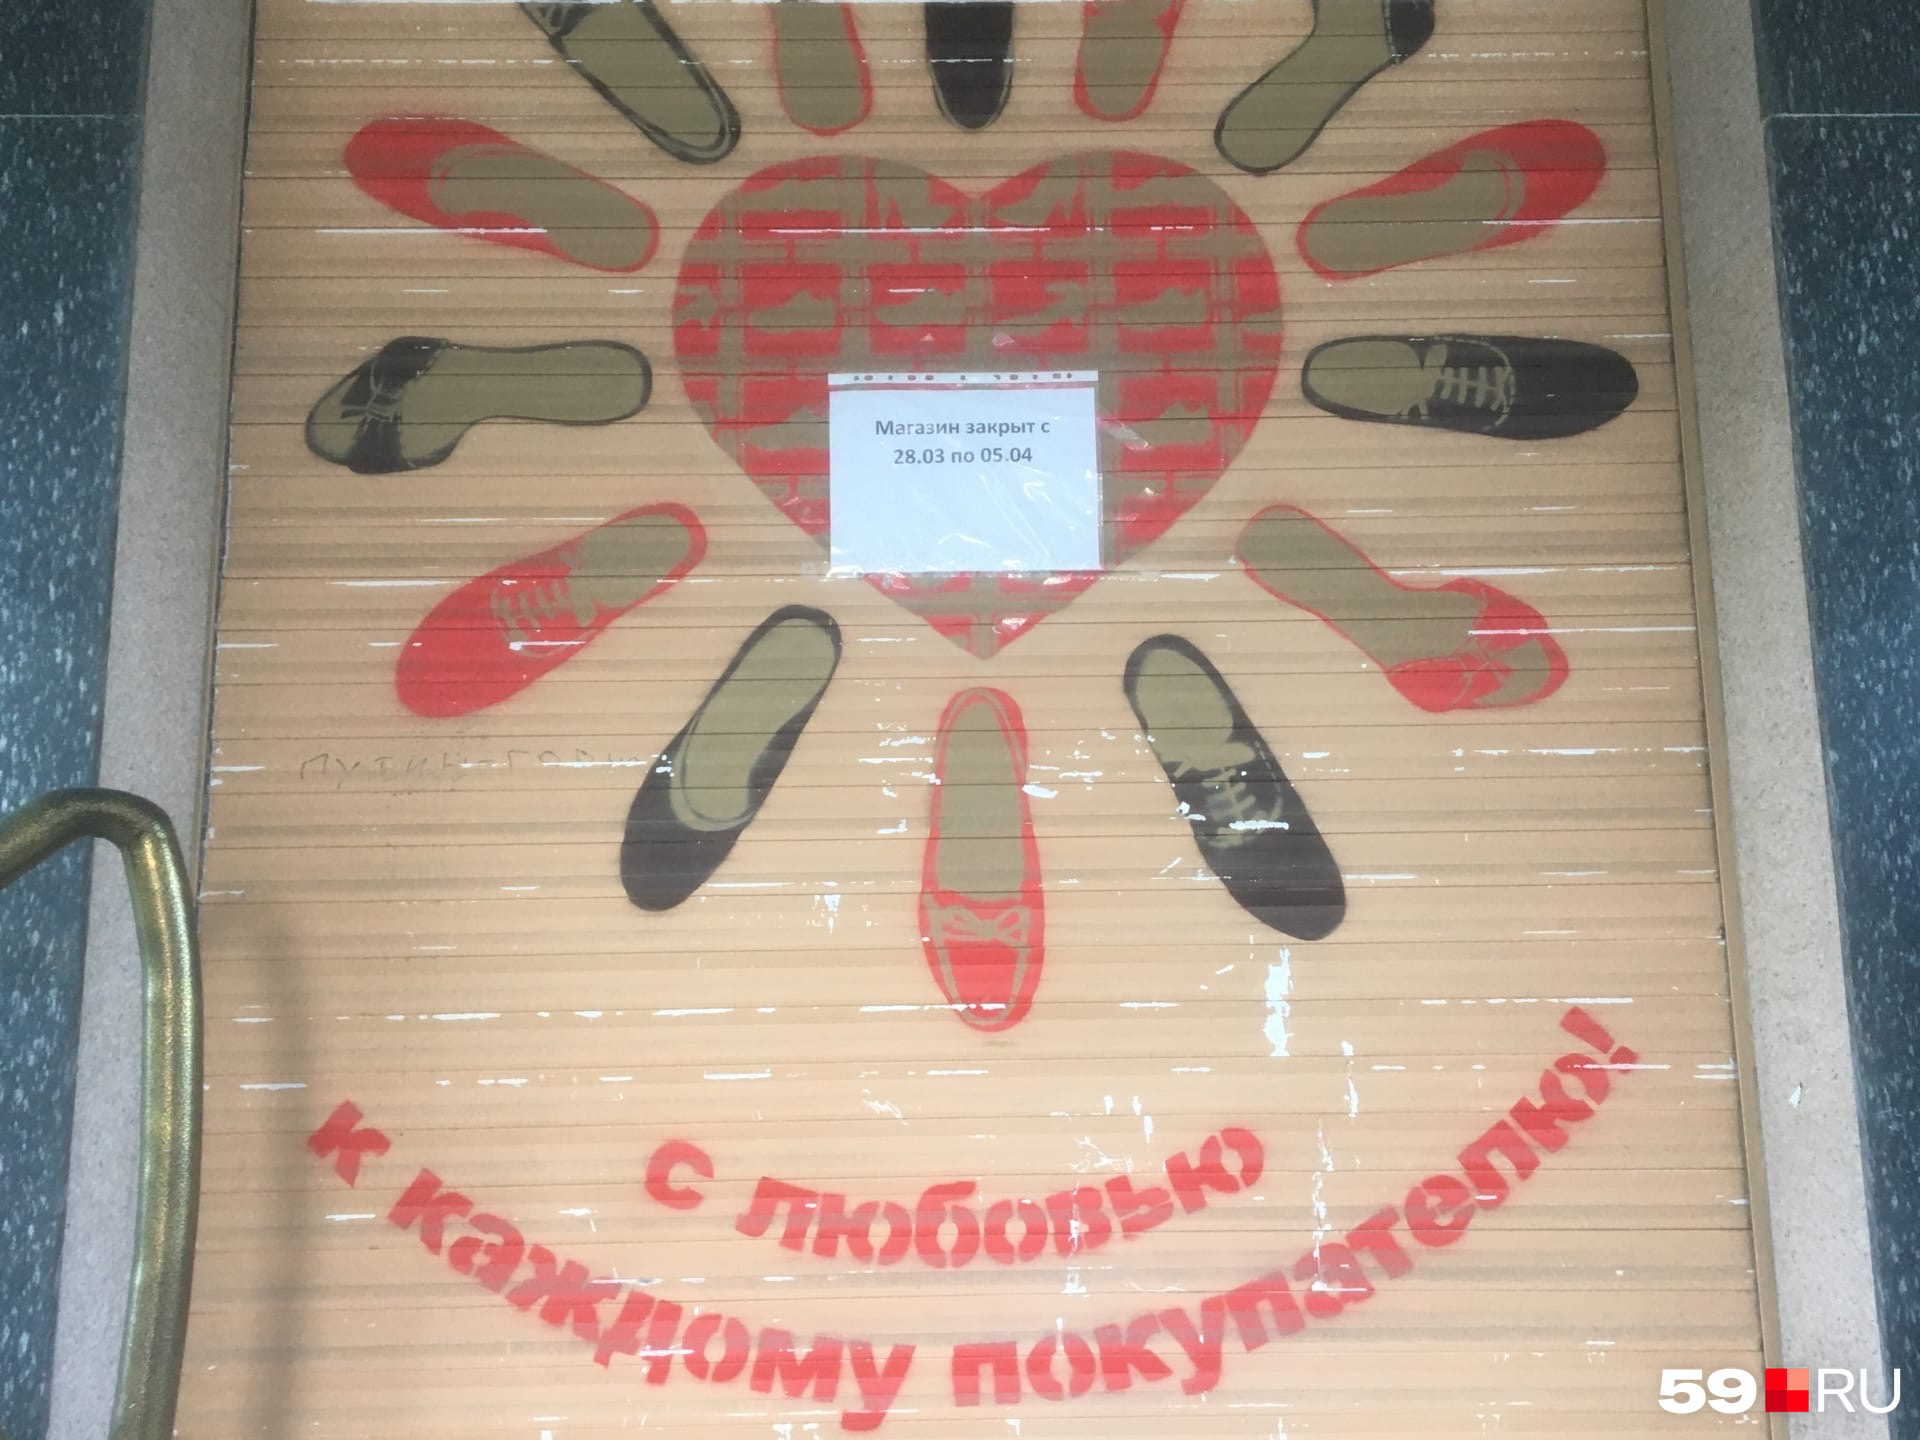 Магазин обуви «Обнова» на Комсомольском проспекте лаконичен в своем объявлении